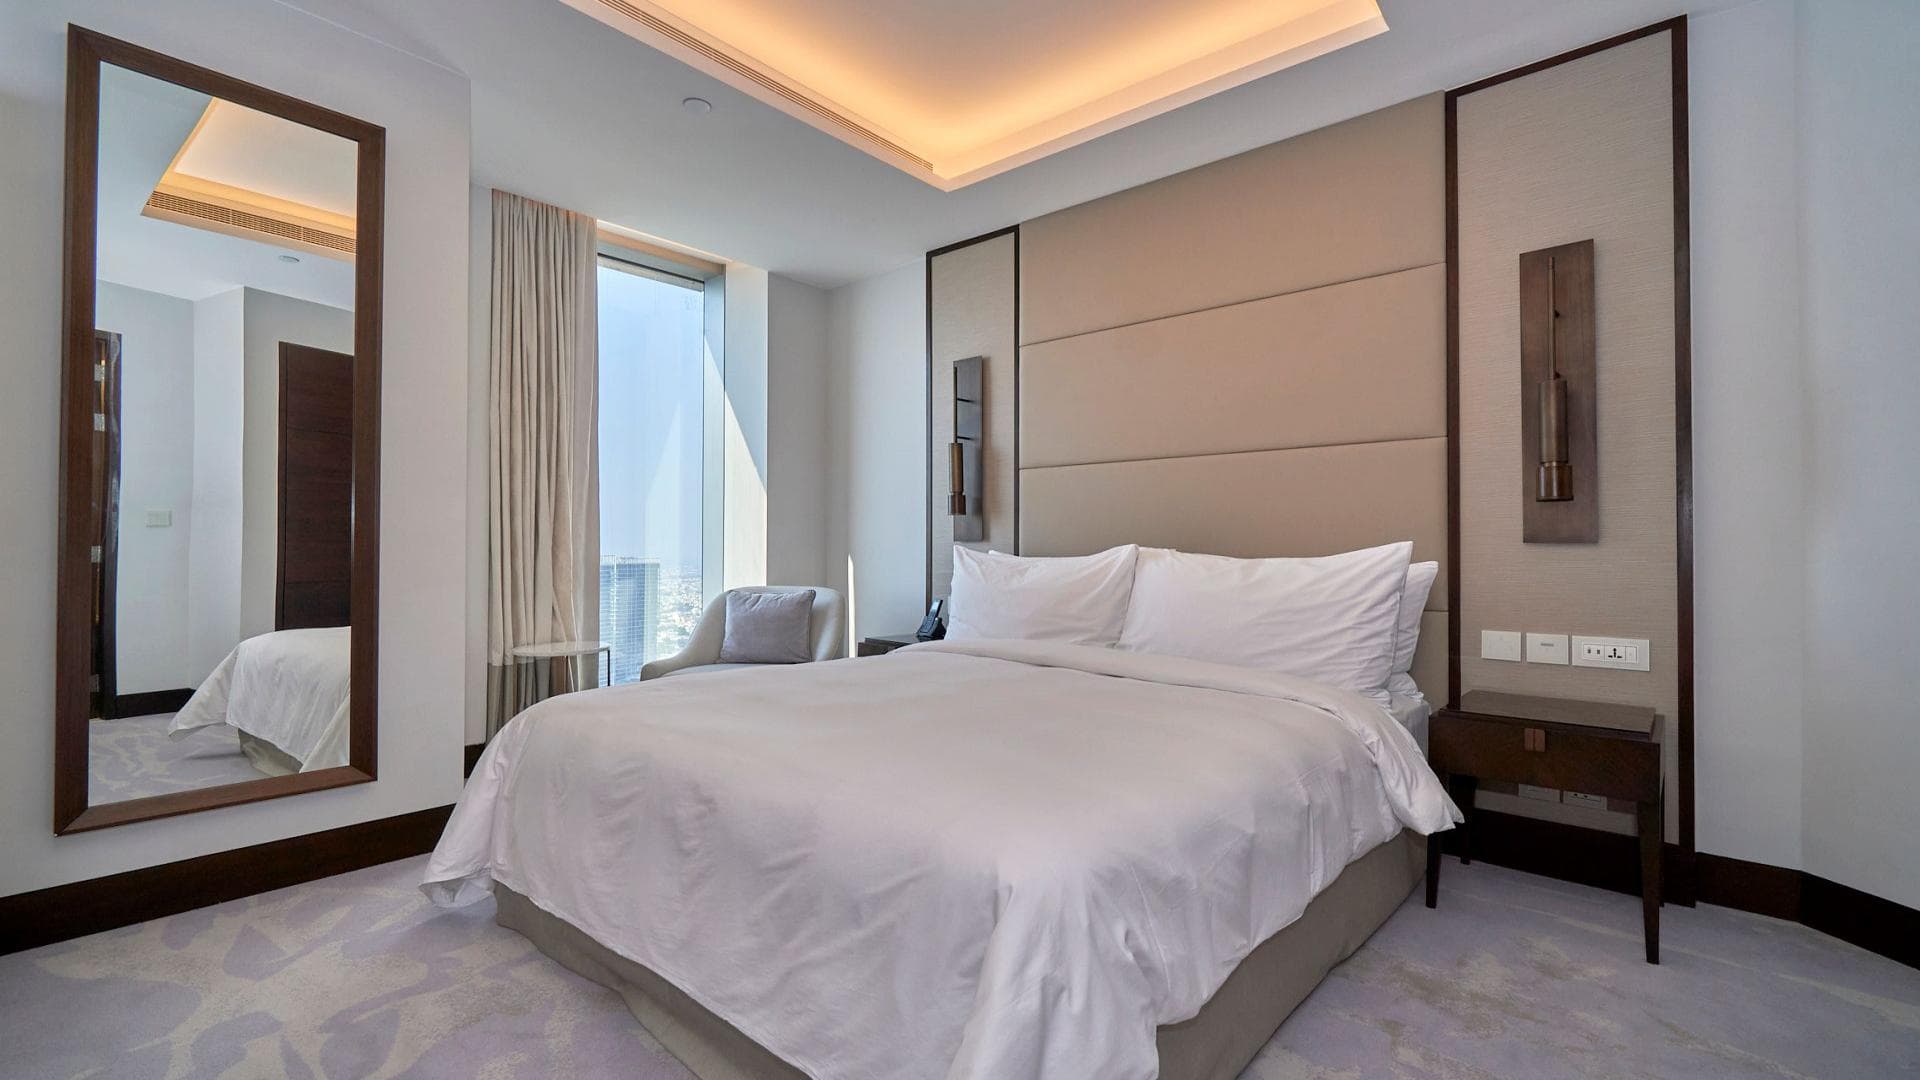 3 Bedroom Apartment For Rent Al Thamam 09 Lp36011 6af8420001adc40.jpeg